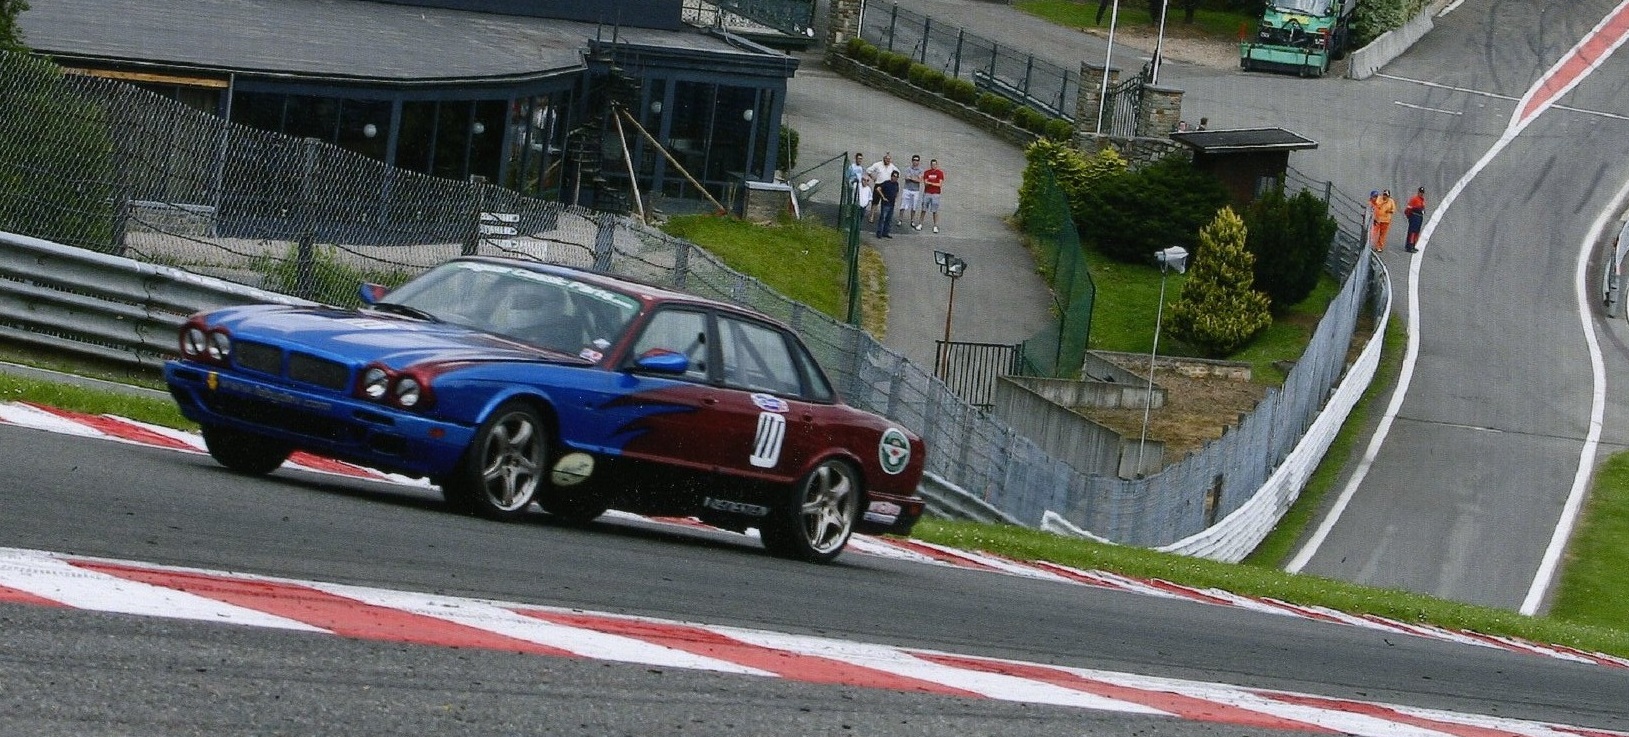 Racing at Belgium Spa 2009